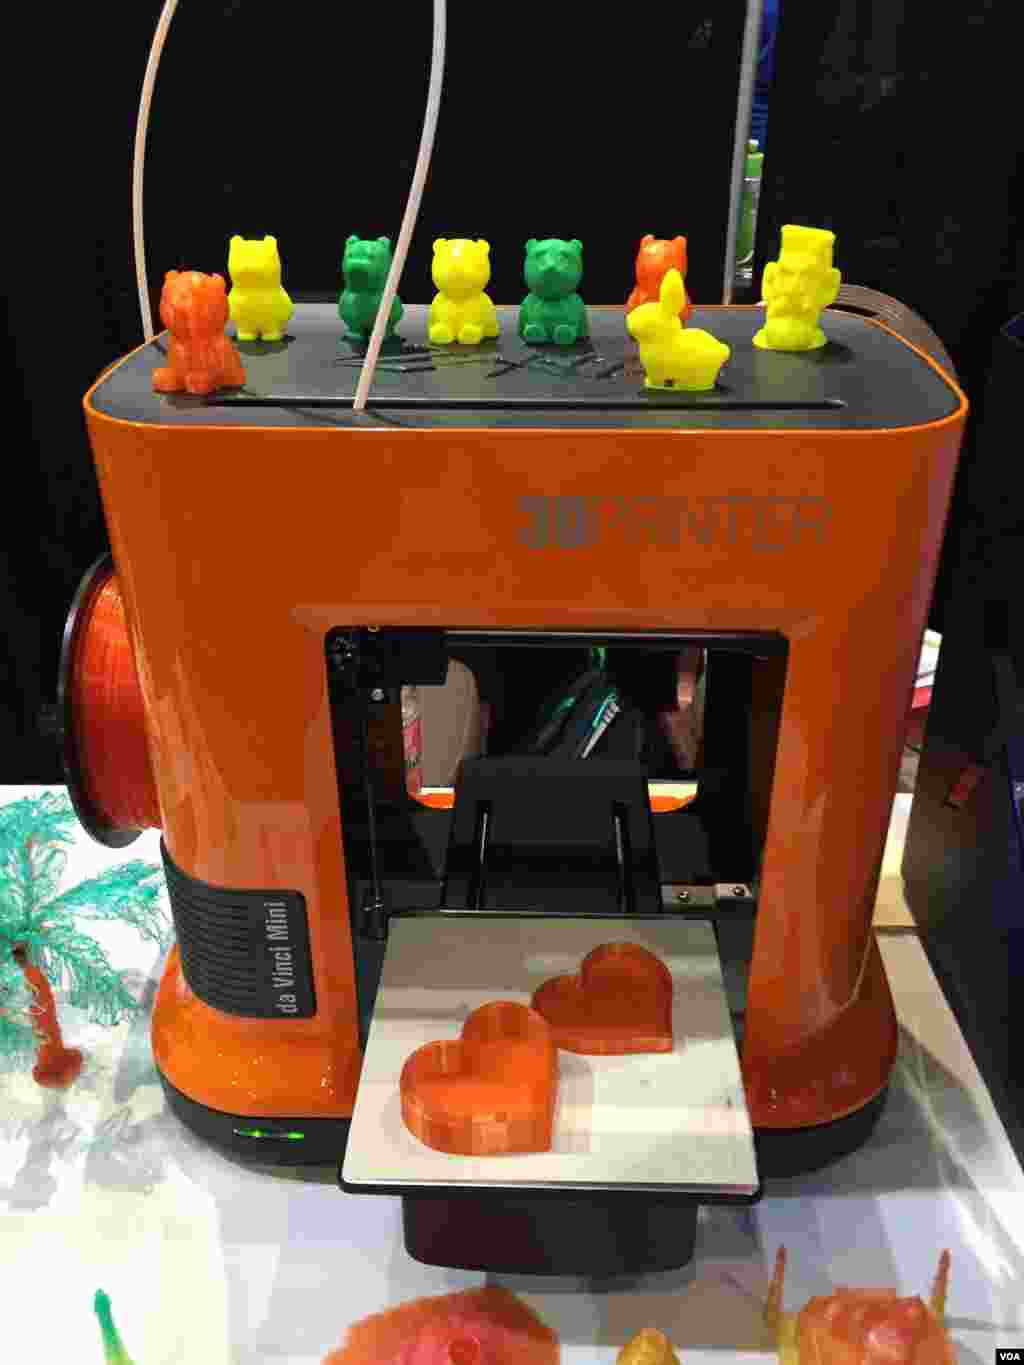  یکی از چالشهای اصلی استفاده همگانی از چاپگرهای سه بعدی قیمت بالای آنهاست. شرکت ایکس وای زی چاپگر سه بعدی ای را وارد بازار کرده که تنها دویست و هفتاد دلار قیمت دارد. 